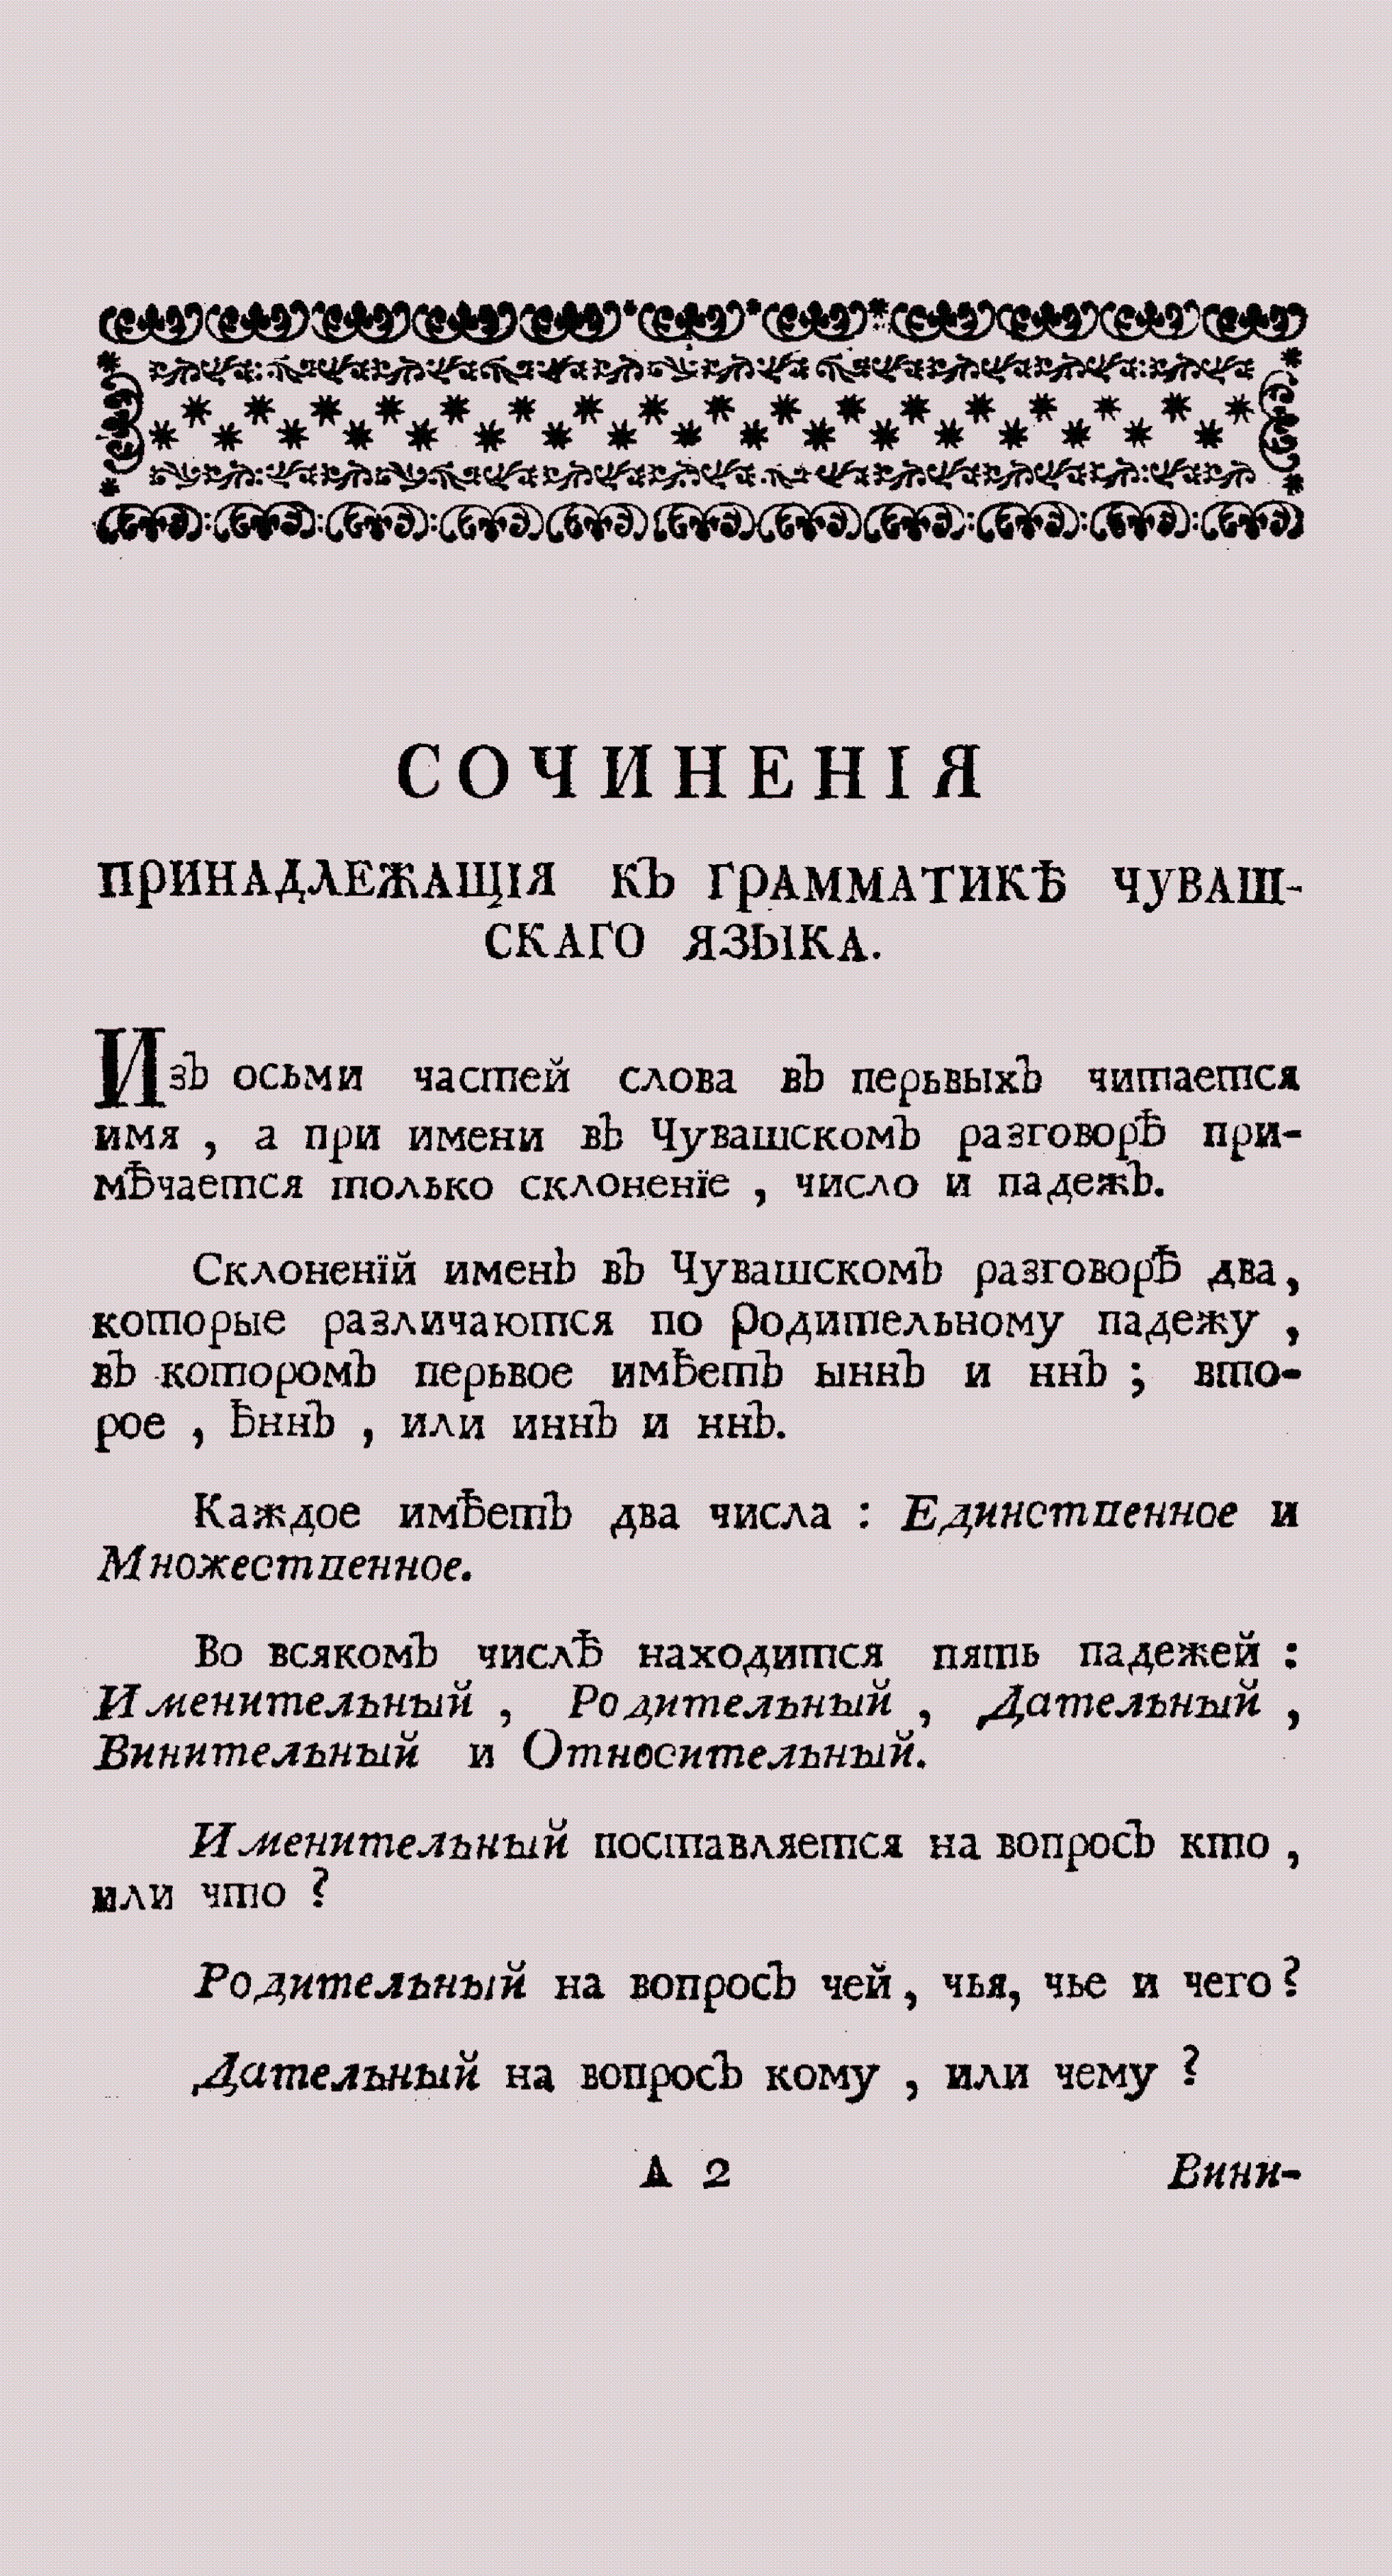 "Страница книги «Сочинения, принадлежащие к грамматике чувашского языка». 1769."